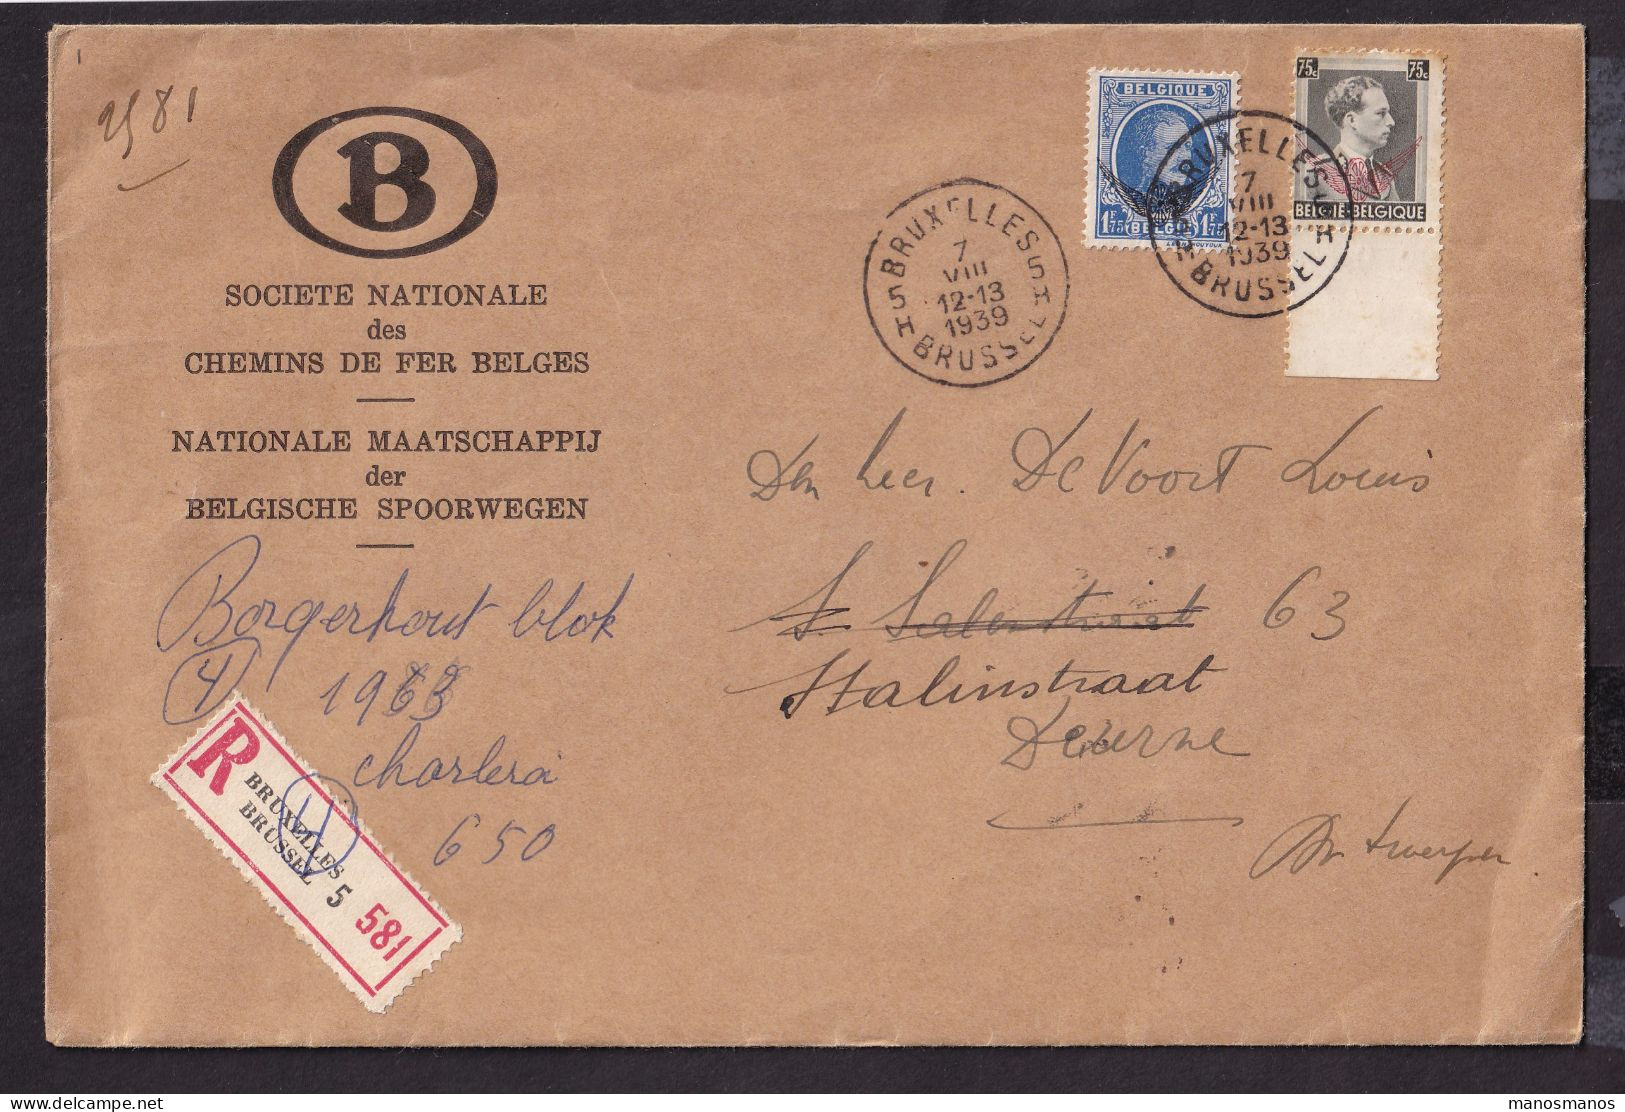 DDFF 678 - Enveloppe De Service Des Chemins De Fer Recommandée - TP Houyoux Et Col Ouvert S6 Et S25 BRUXELLES 1939 - Covers & Documents